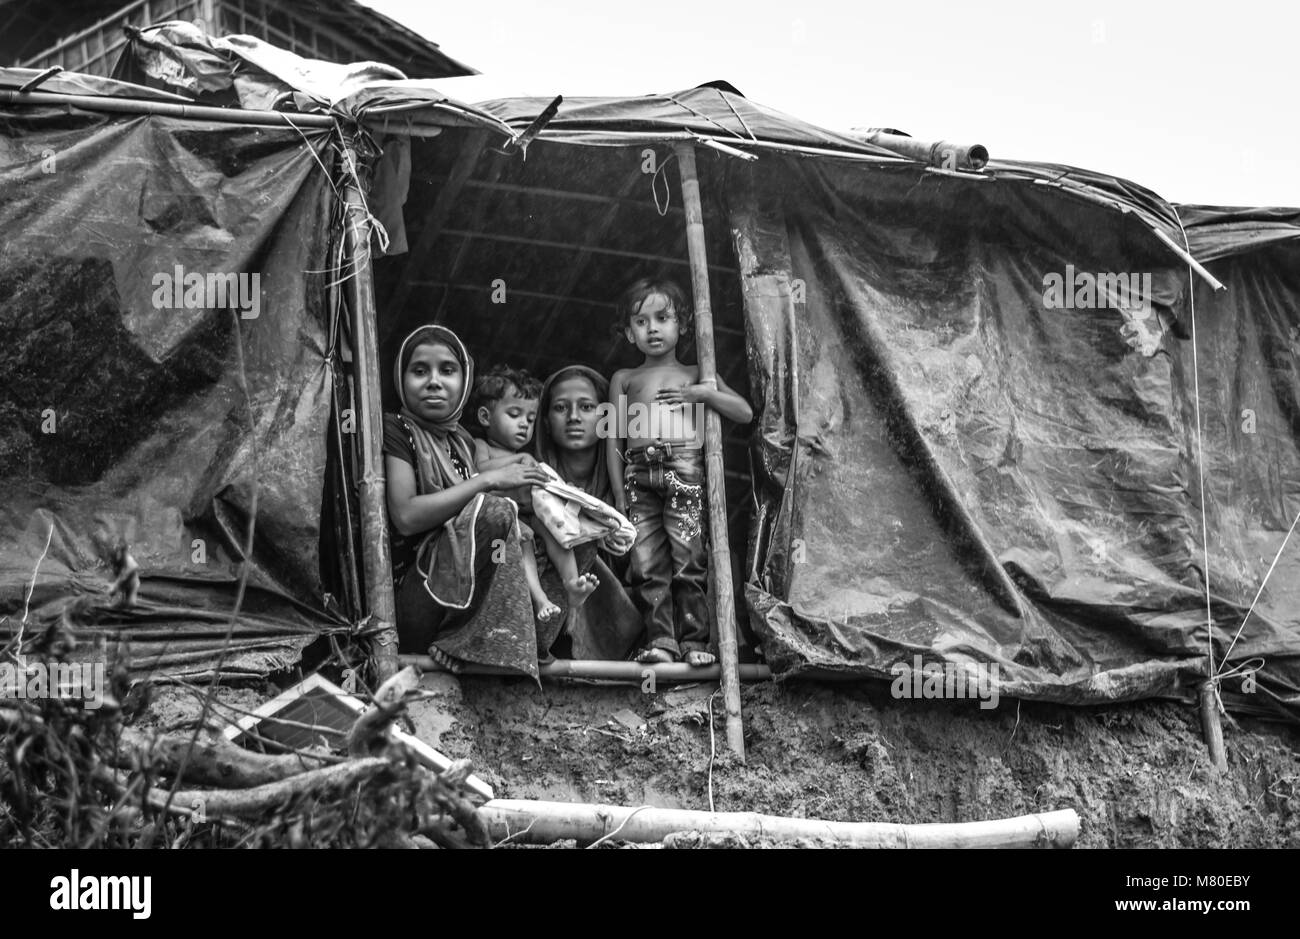 Peuple Rohingya disent qu'ils sont descendants des musulmans, peut-être les commerçants arabes et persans, qui sont venus au Myanmar il y a des générations. .... Banque D'Images